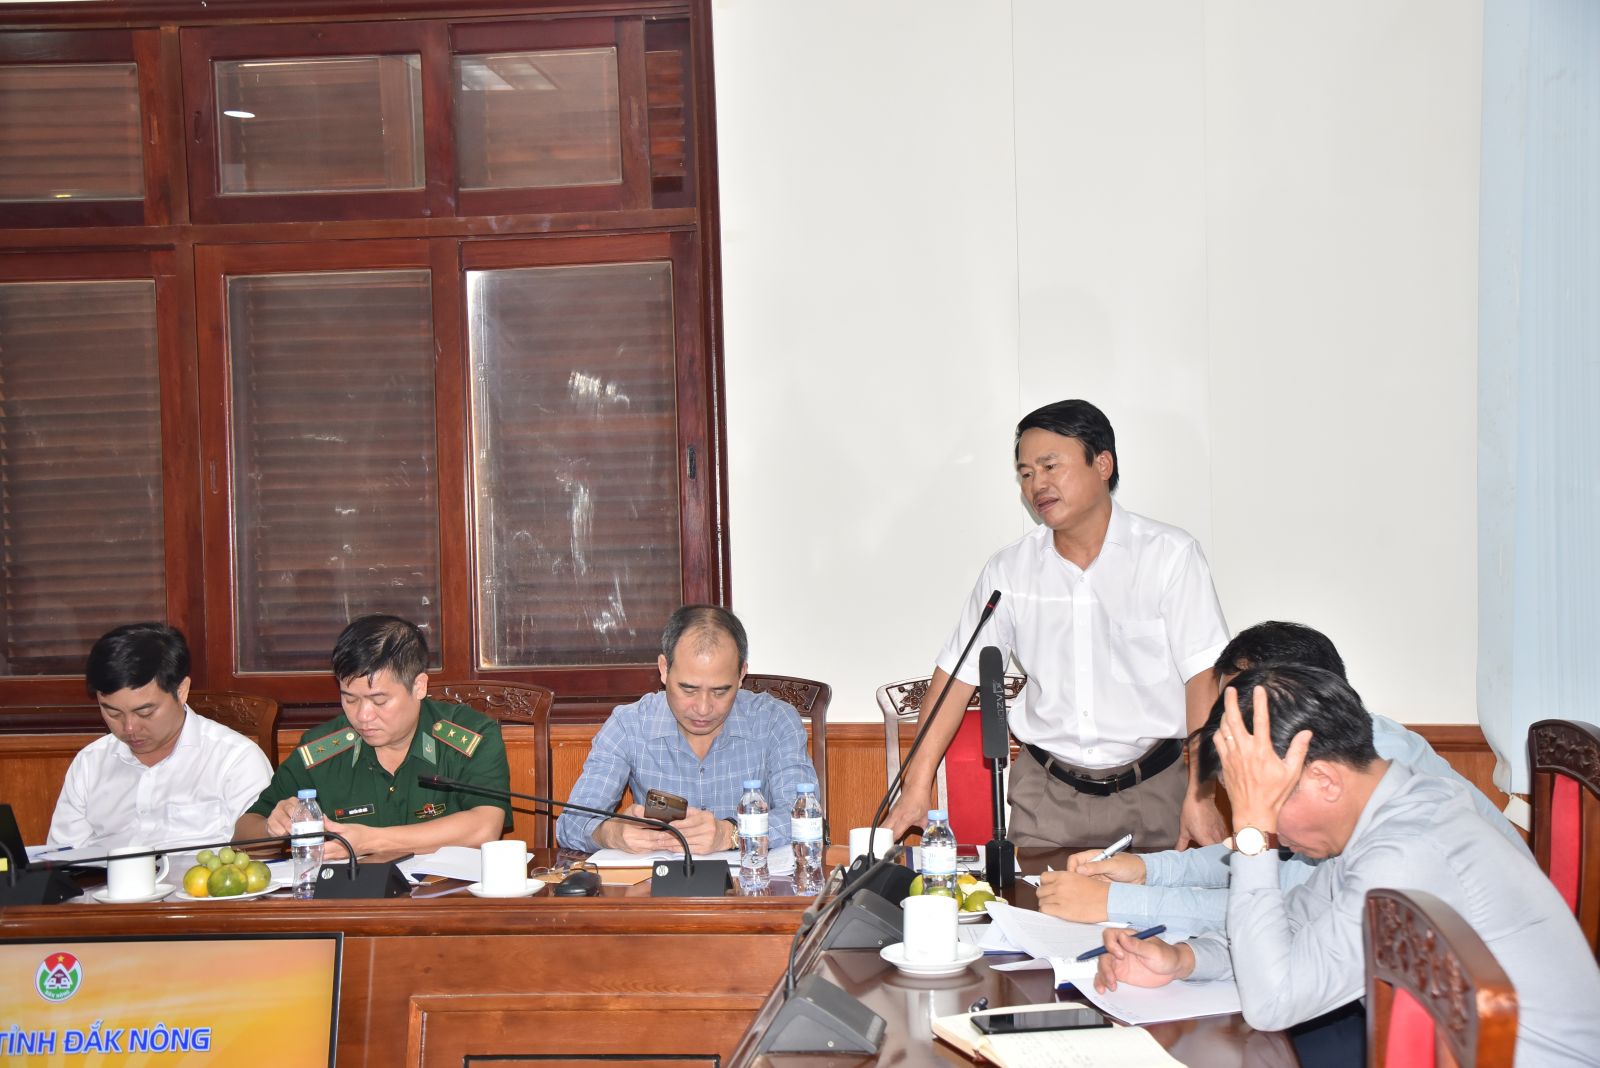 Đại diện các sở, ban, ngành và địa phương tỉnh Đắk Nông phát biểu tại buổi làm việc